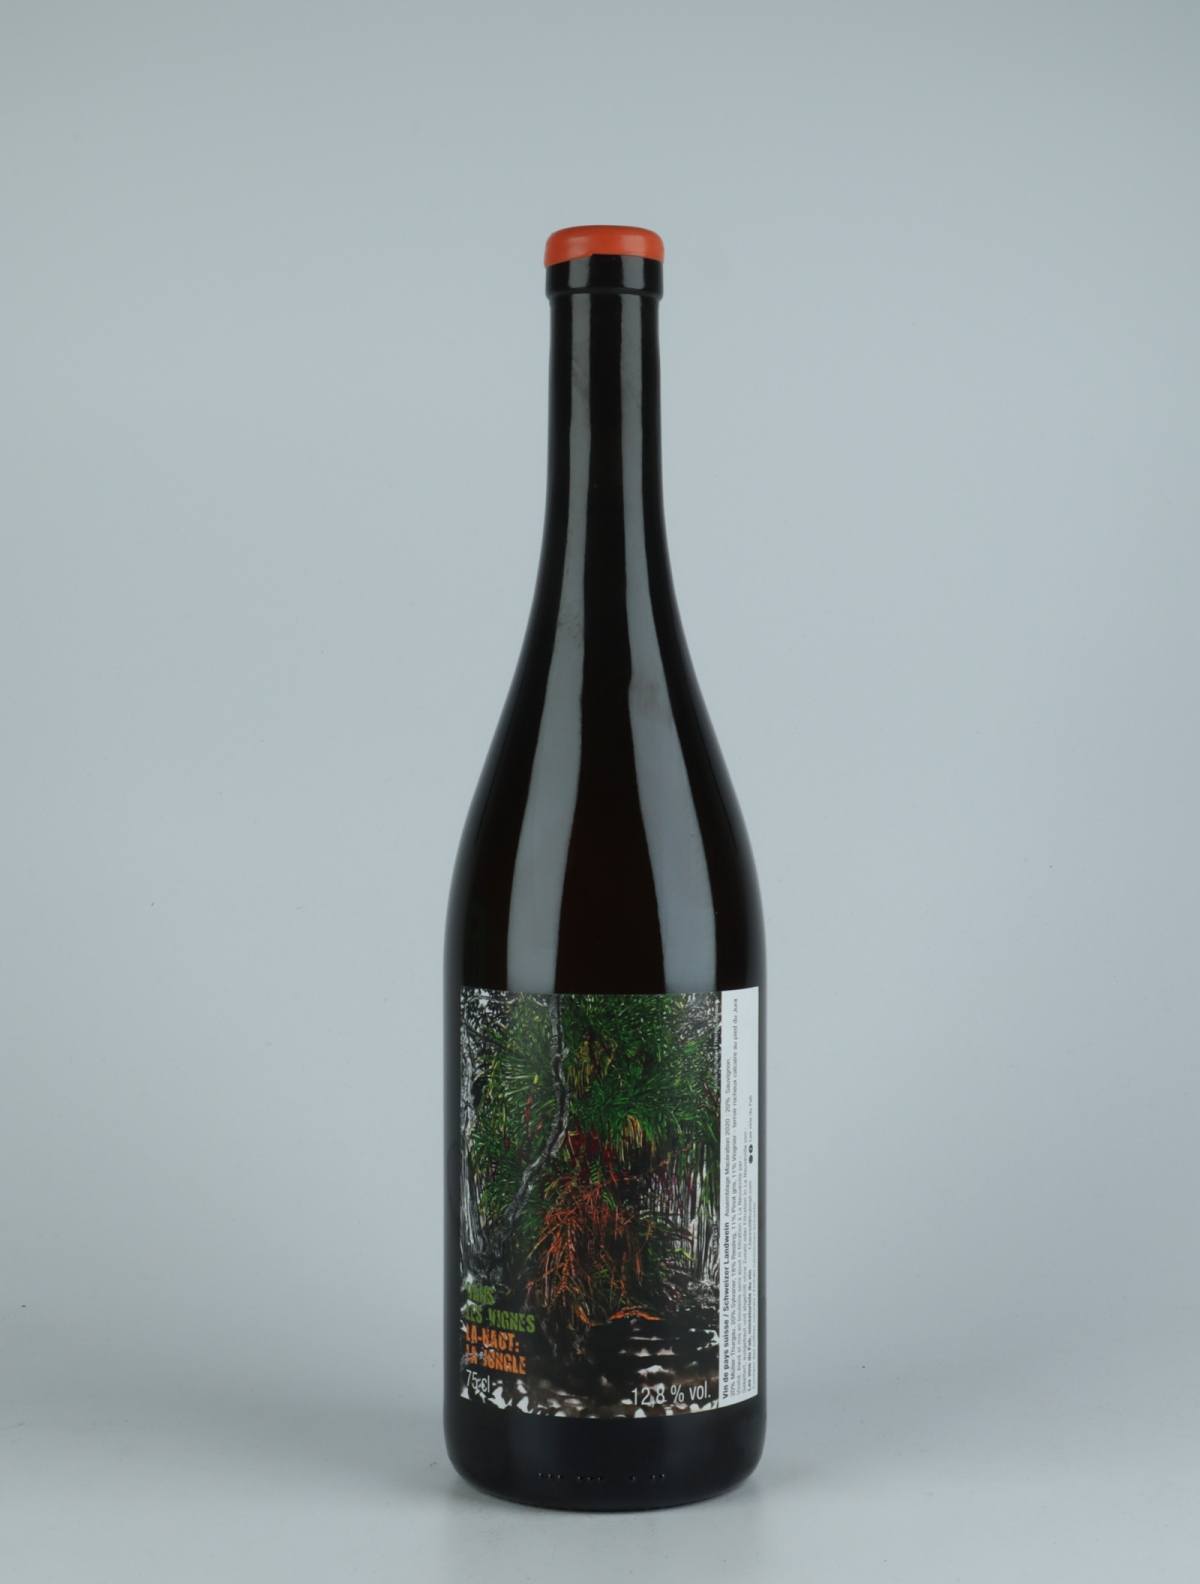 A bottle 2020 Dans les Vignes La-Haut: La Jungle Orange wine from Les Vins du Fab, Neuchâtel in 